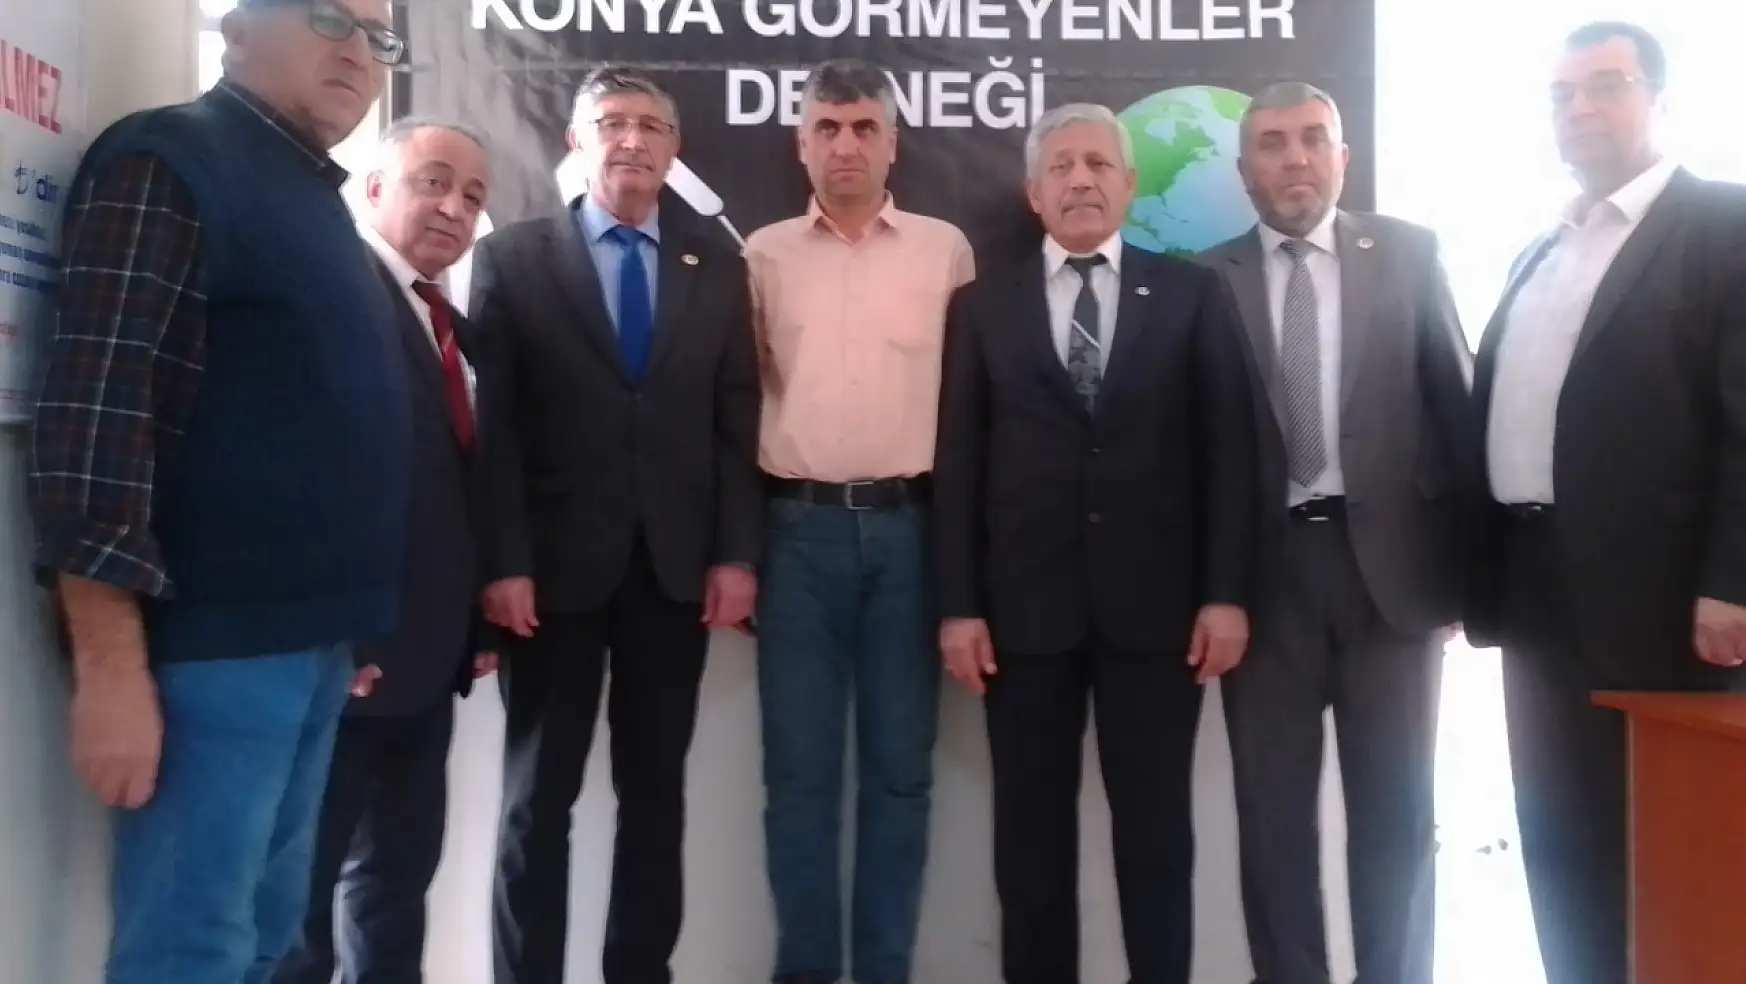 BBP' Karatay yönetiminden Konya Görmeyenler Derneği'ne destek ziyareti!